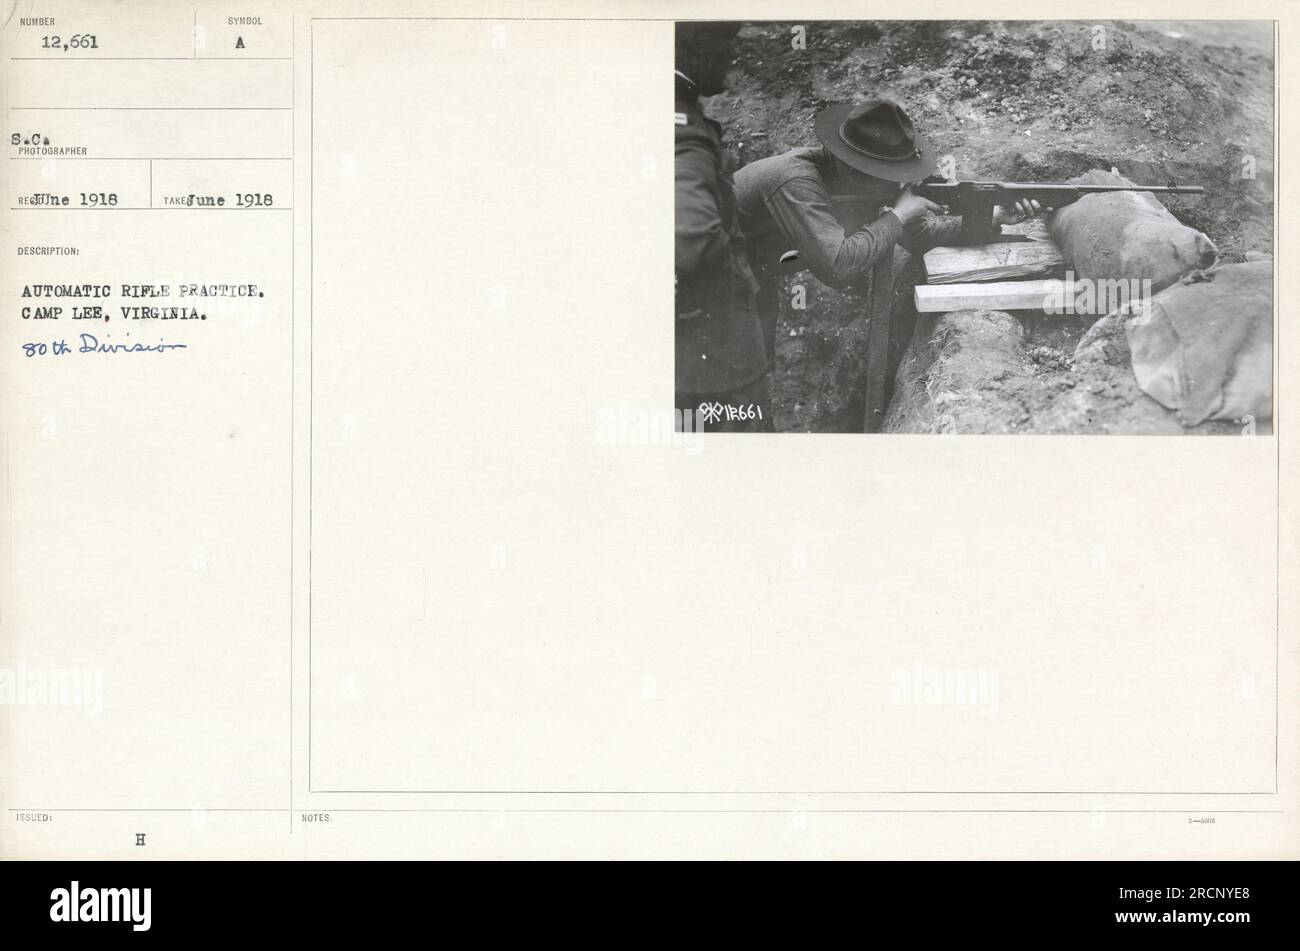 Soldaten der 80. Division in Camp Lee, Virginia, im Juni 1918 an automatischen Gewehrübungen beteiligt. Das Foto mit der Nummer 12.661 wurde von dem Fotografen René aufgenommen. Zusätzliche Hinweise auf dem Foto weisen auf das Vorhandensein des 18661-Symbols hin. Stockfoto